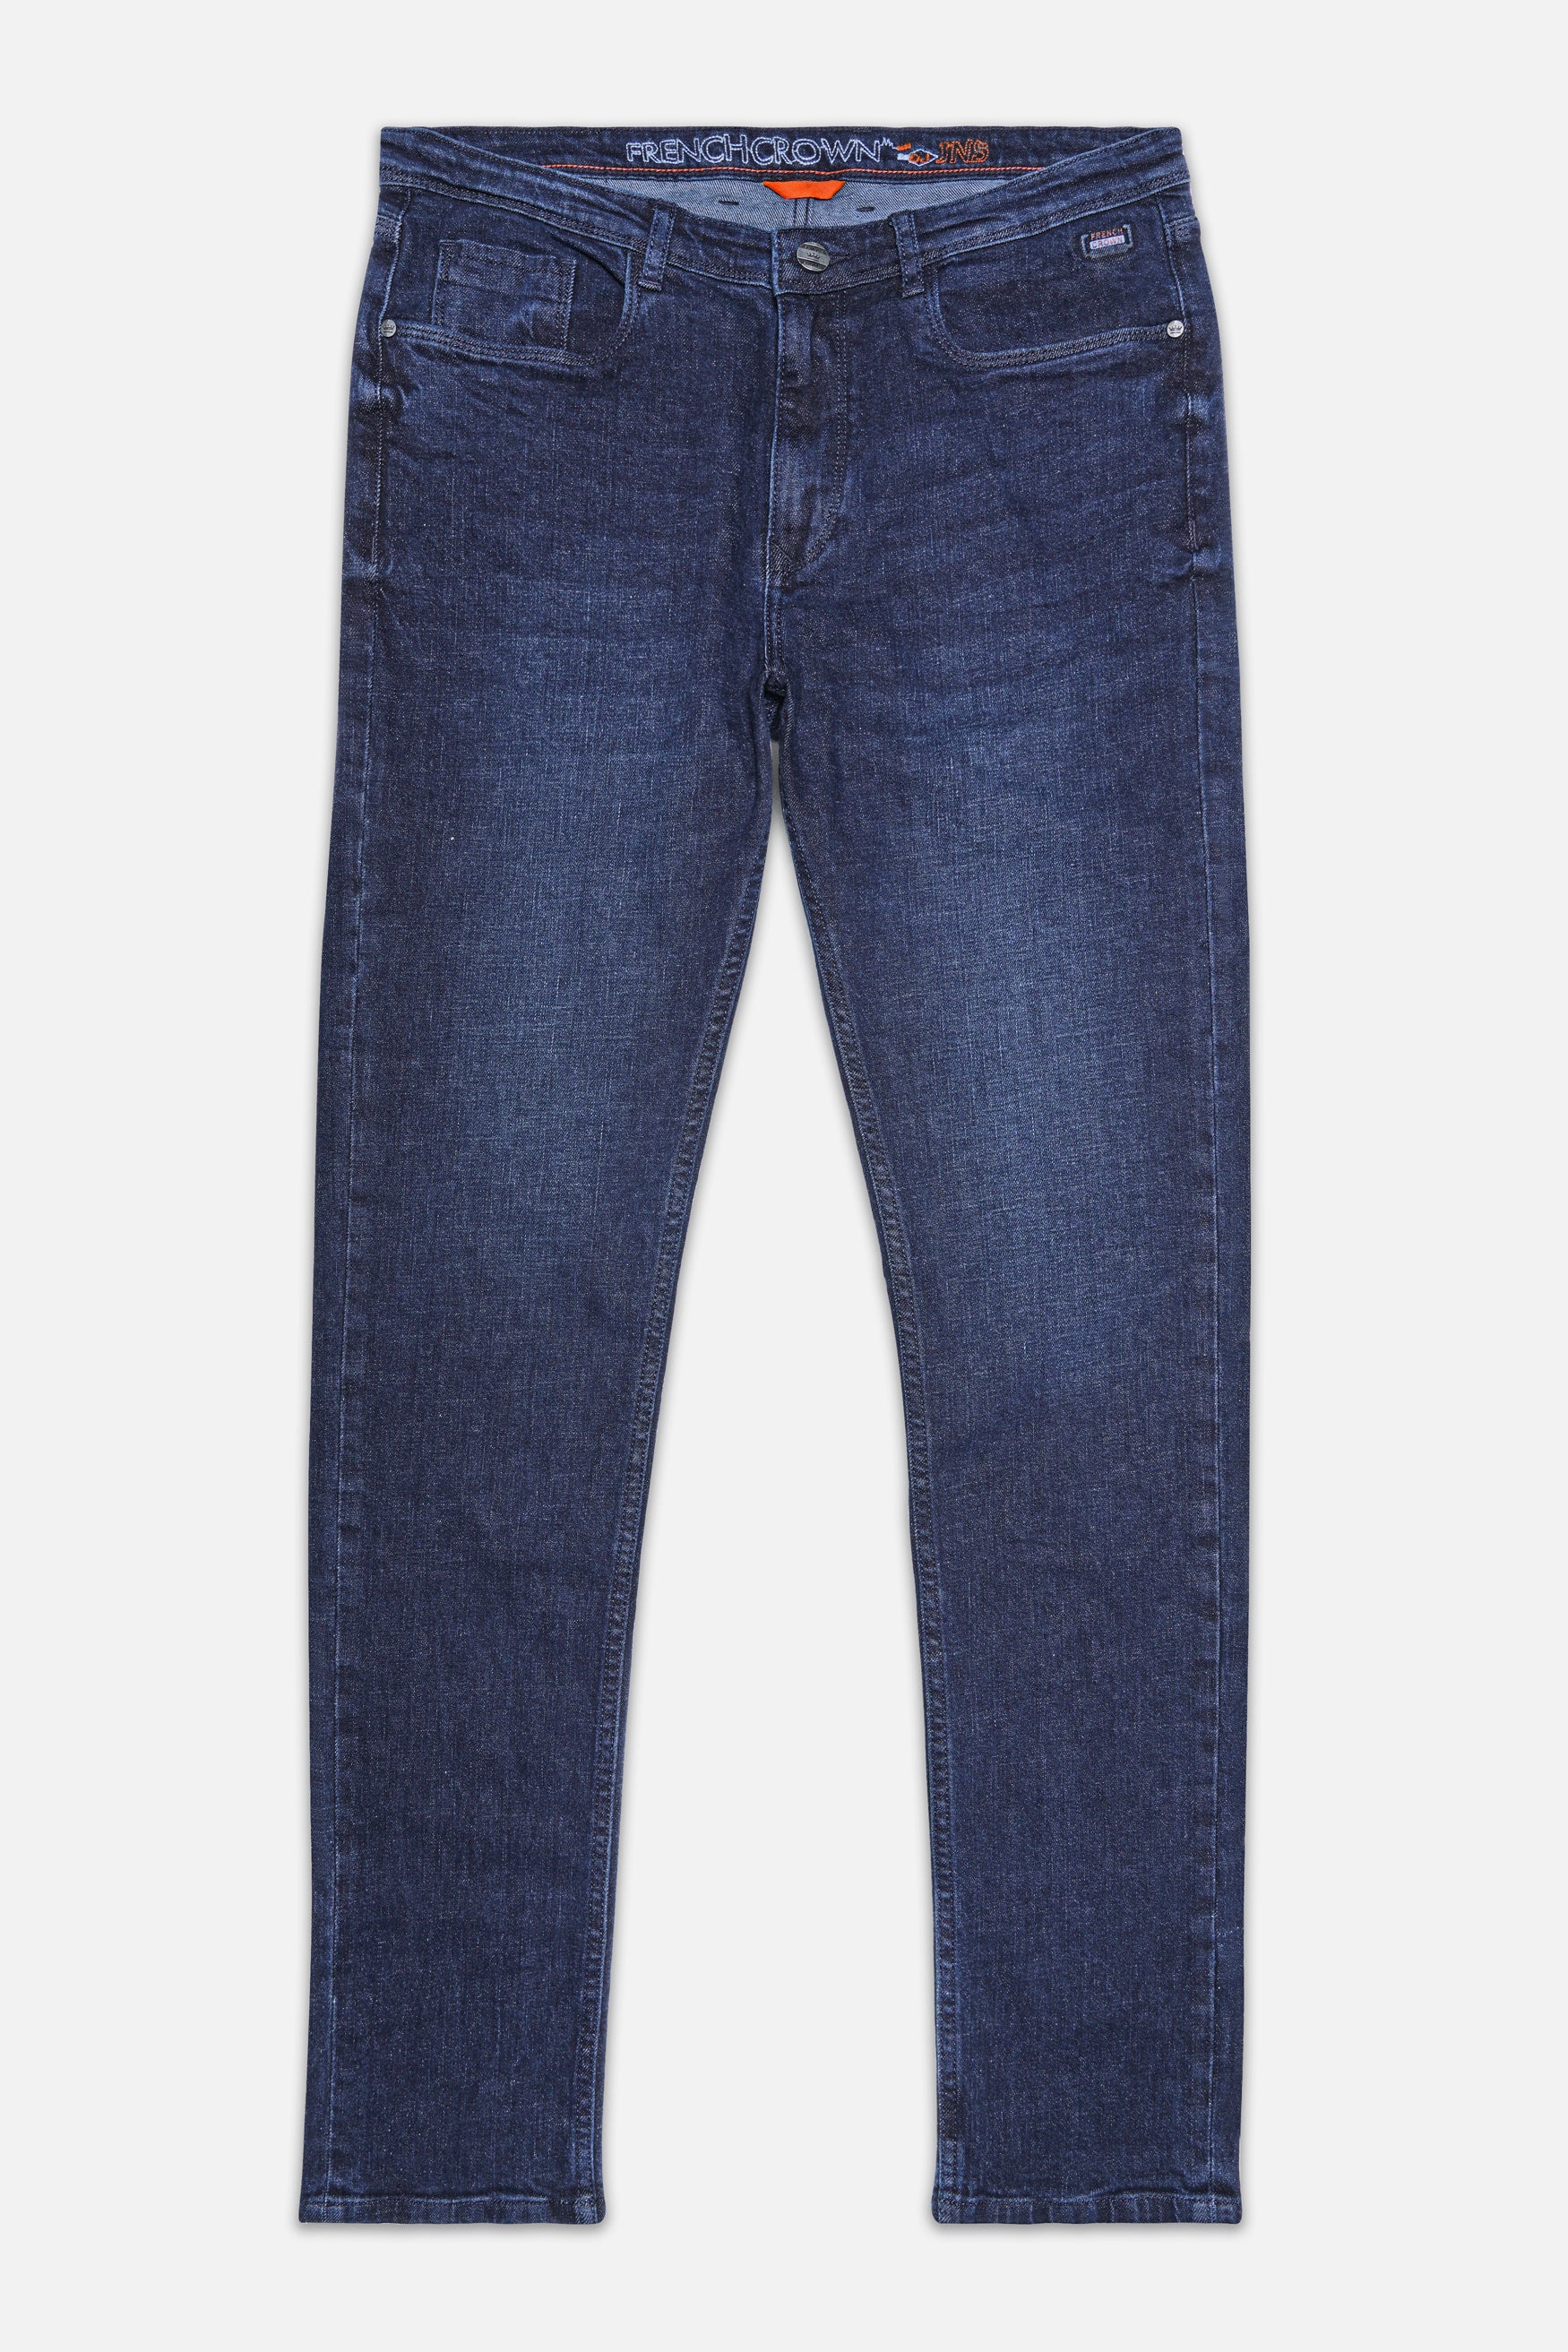 Buy Men Navy Slim Fit Dark Wash Jeans Online - 818169 | Allen Solly